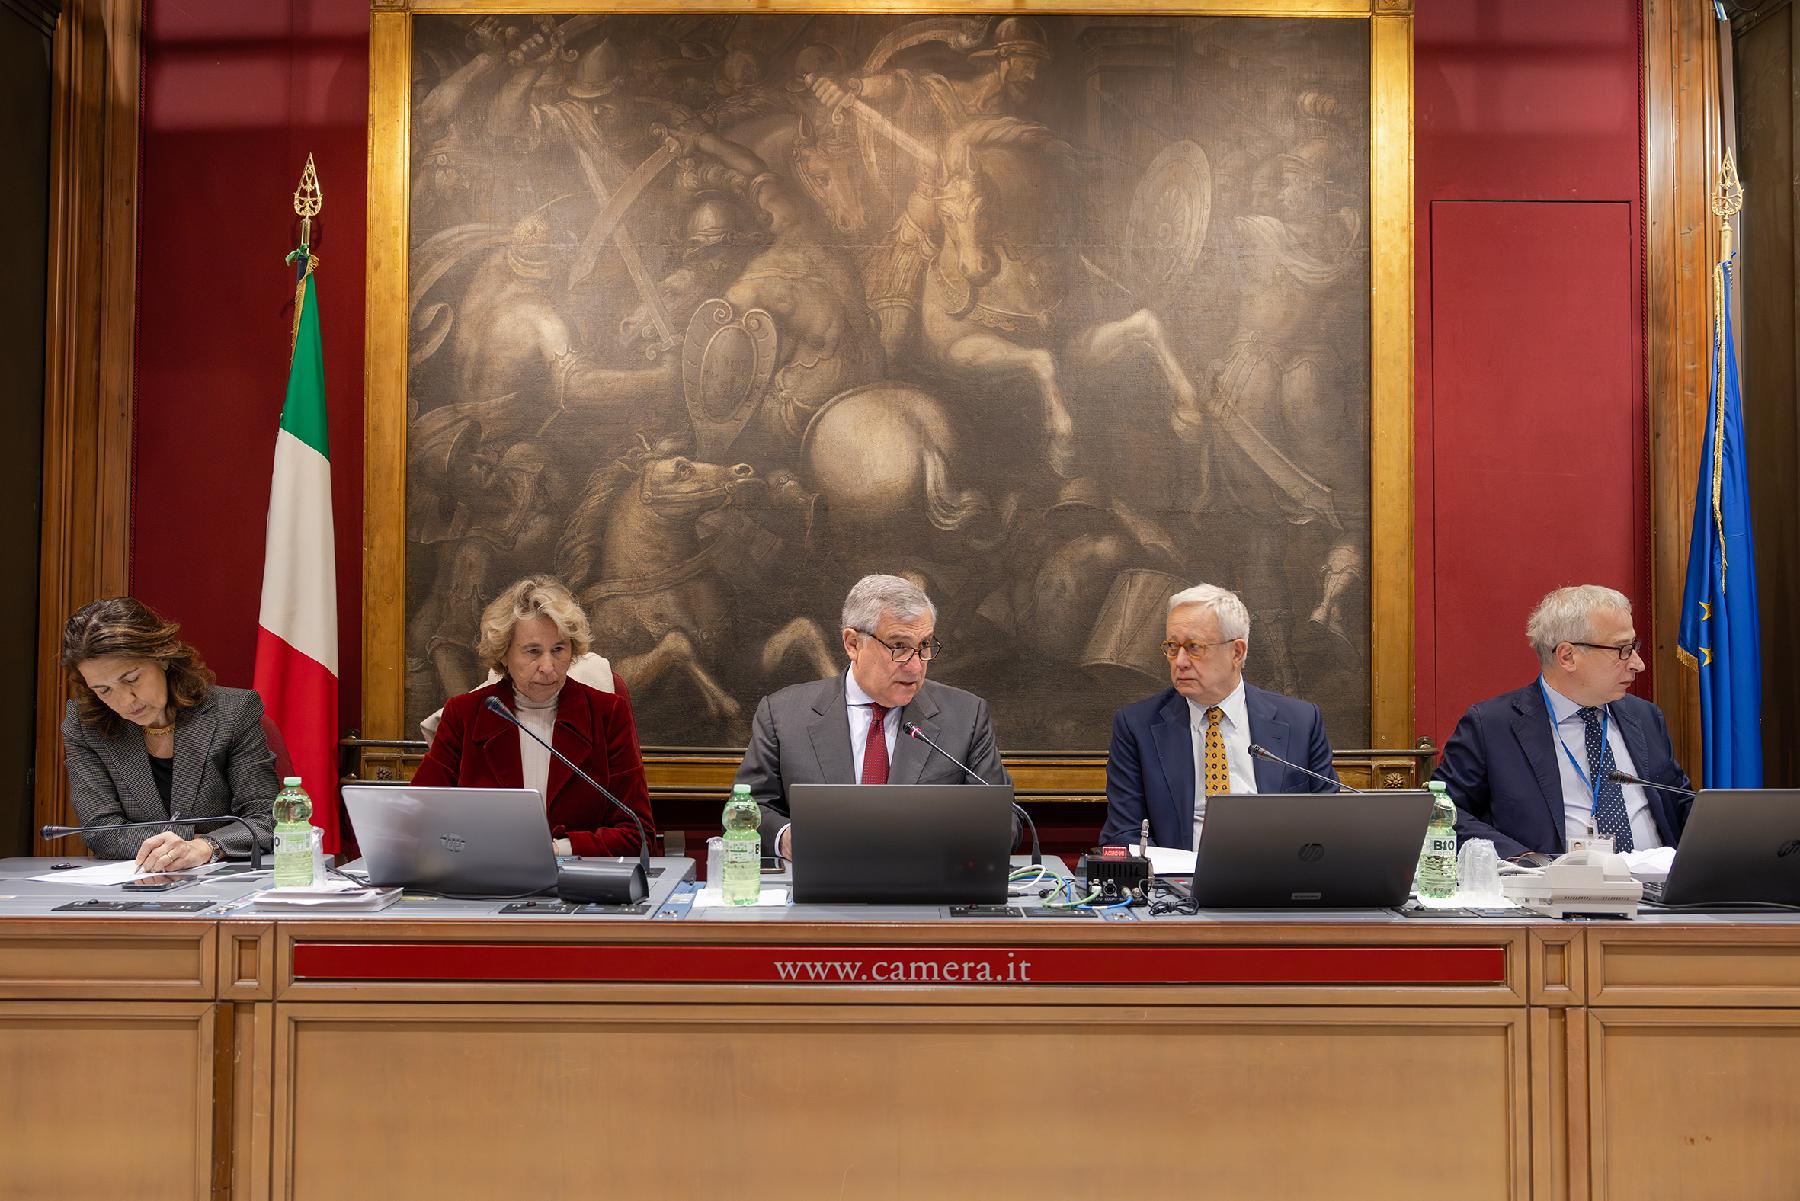 Cooperazione sicurezza Italia e Ucraina, audizione Tajani